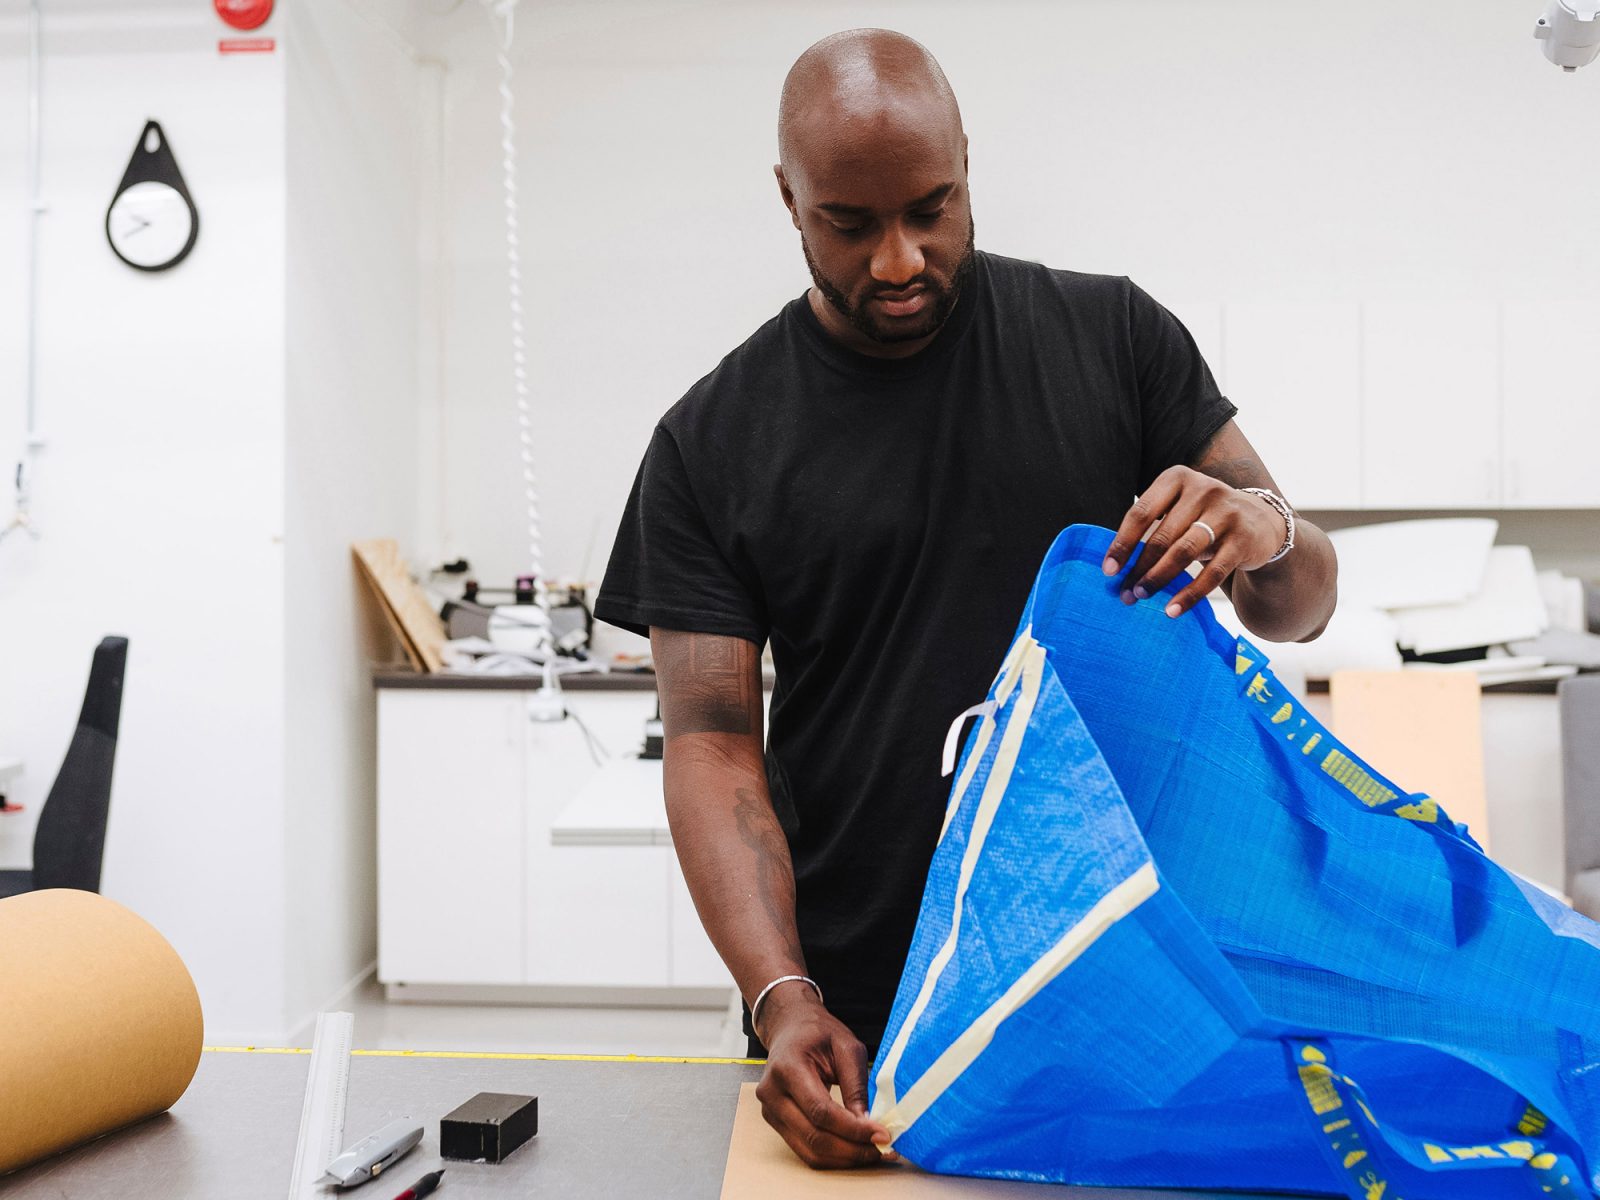 Un homme en T-shirt, tête rasée, Virgil Abloh, travaille à transformer un sac FRAKTA bleu dans un atelier.